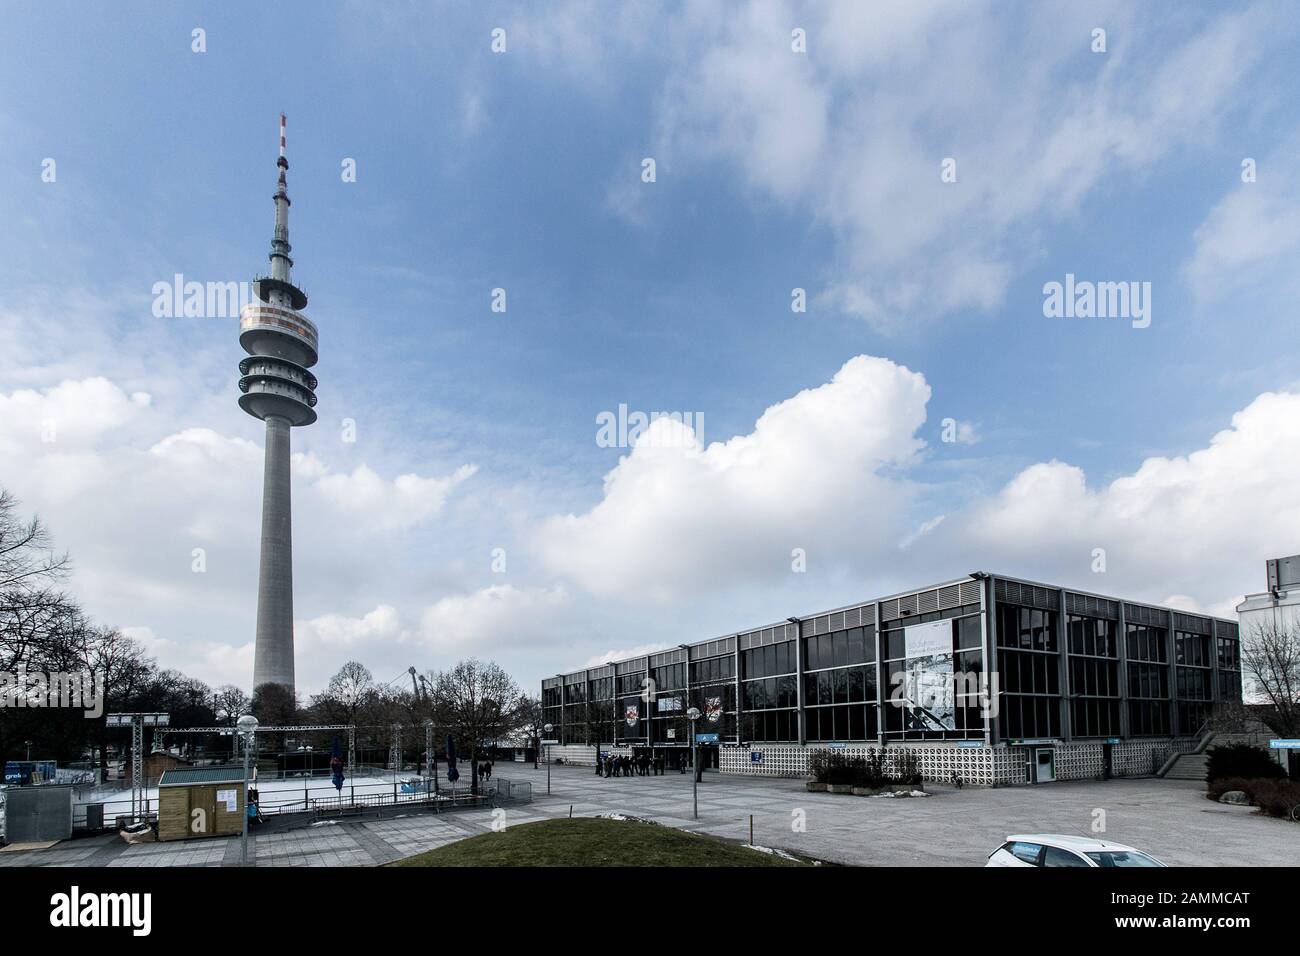 Le centre olympique de sports de glace du parc olympique de Munich sur l'Oberwiesenfeld, avec la tour olympique en arrière-plan [traduction automatique] Banque D'Images